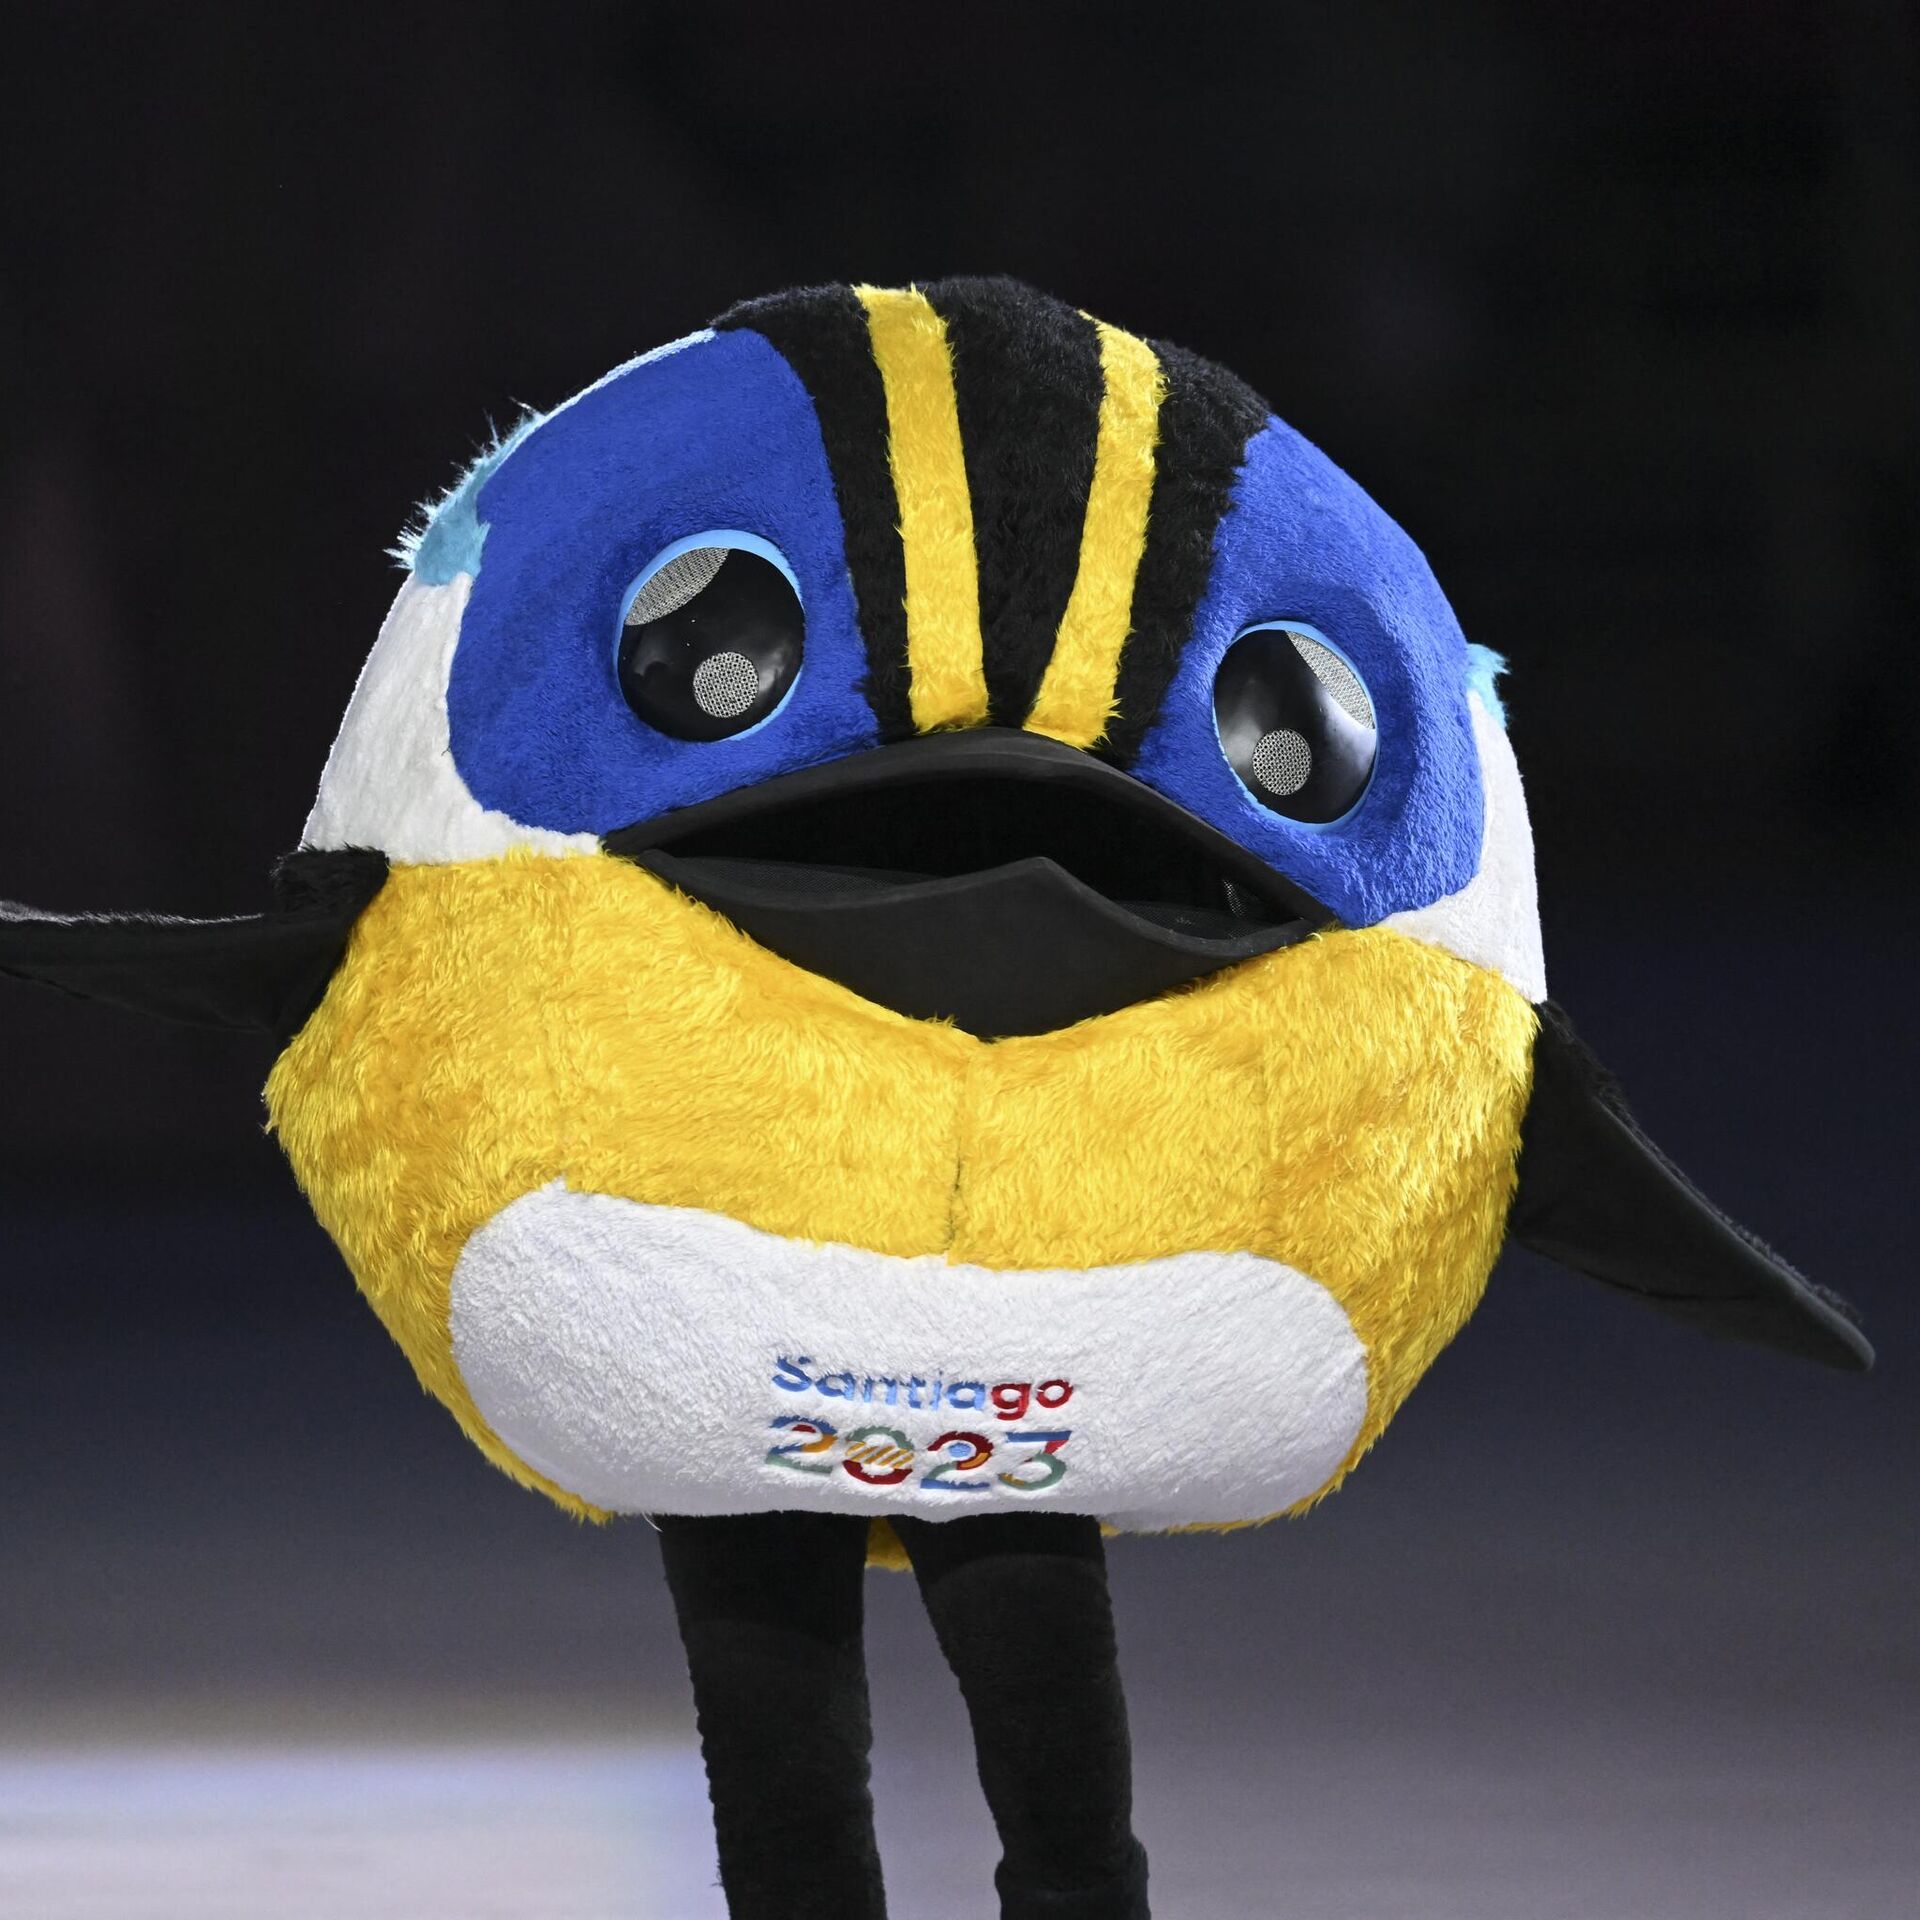 Santiago 2023: ¿quién es Fiu, mascota de los Juegos Panamericanos?